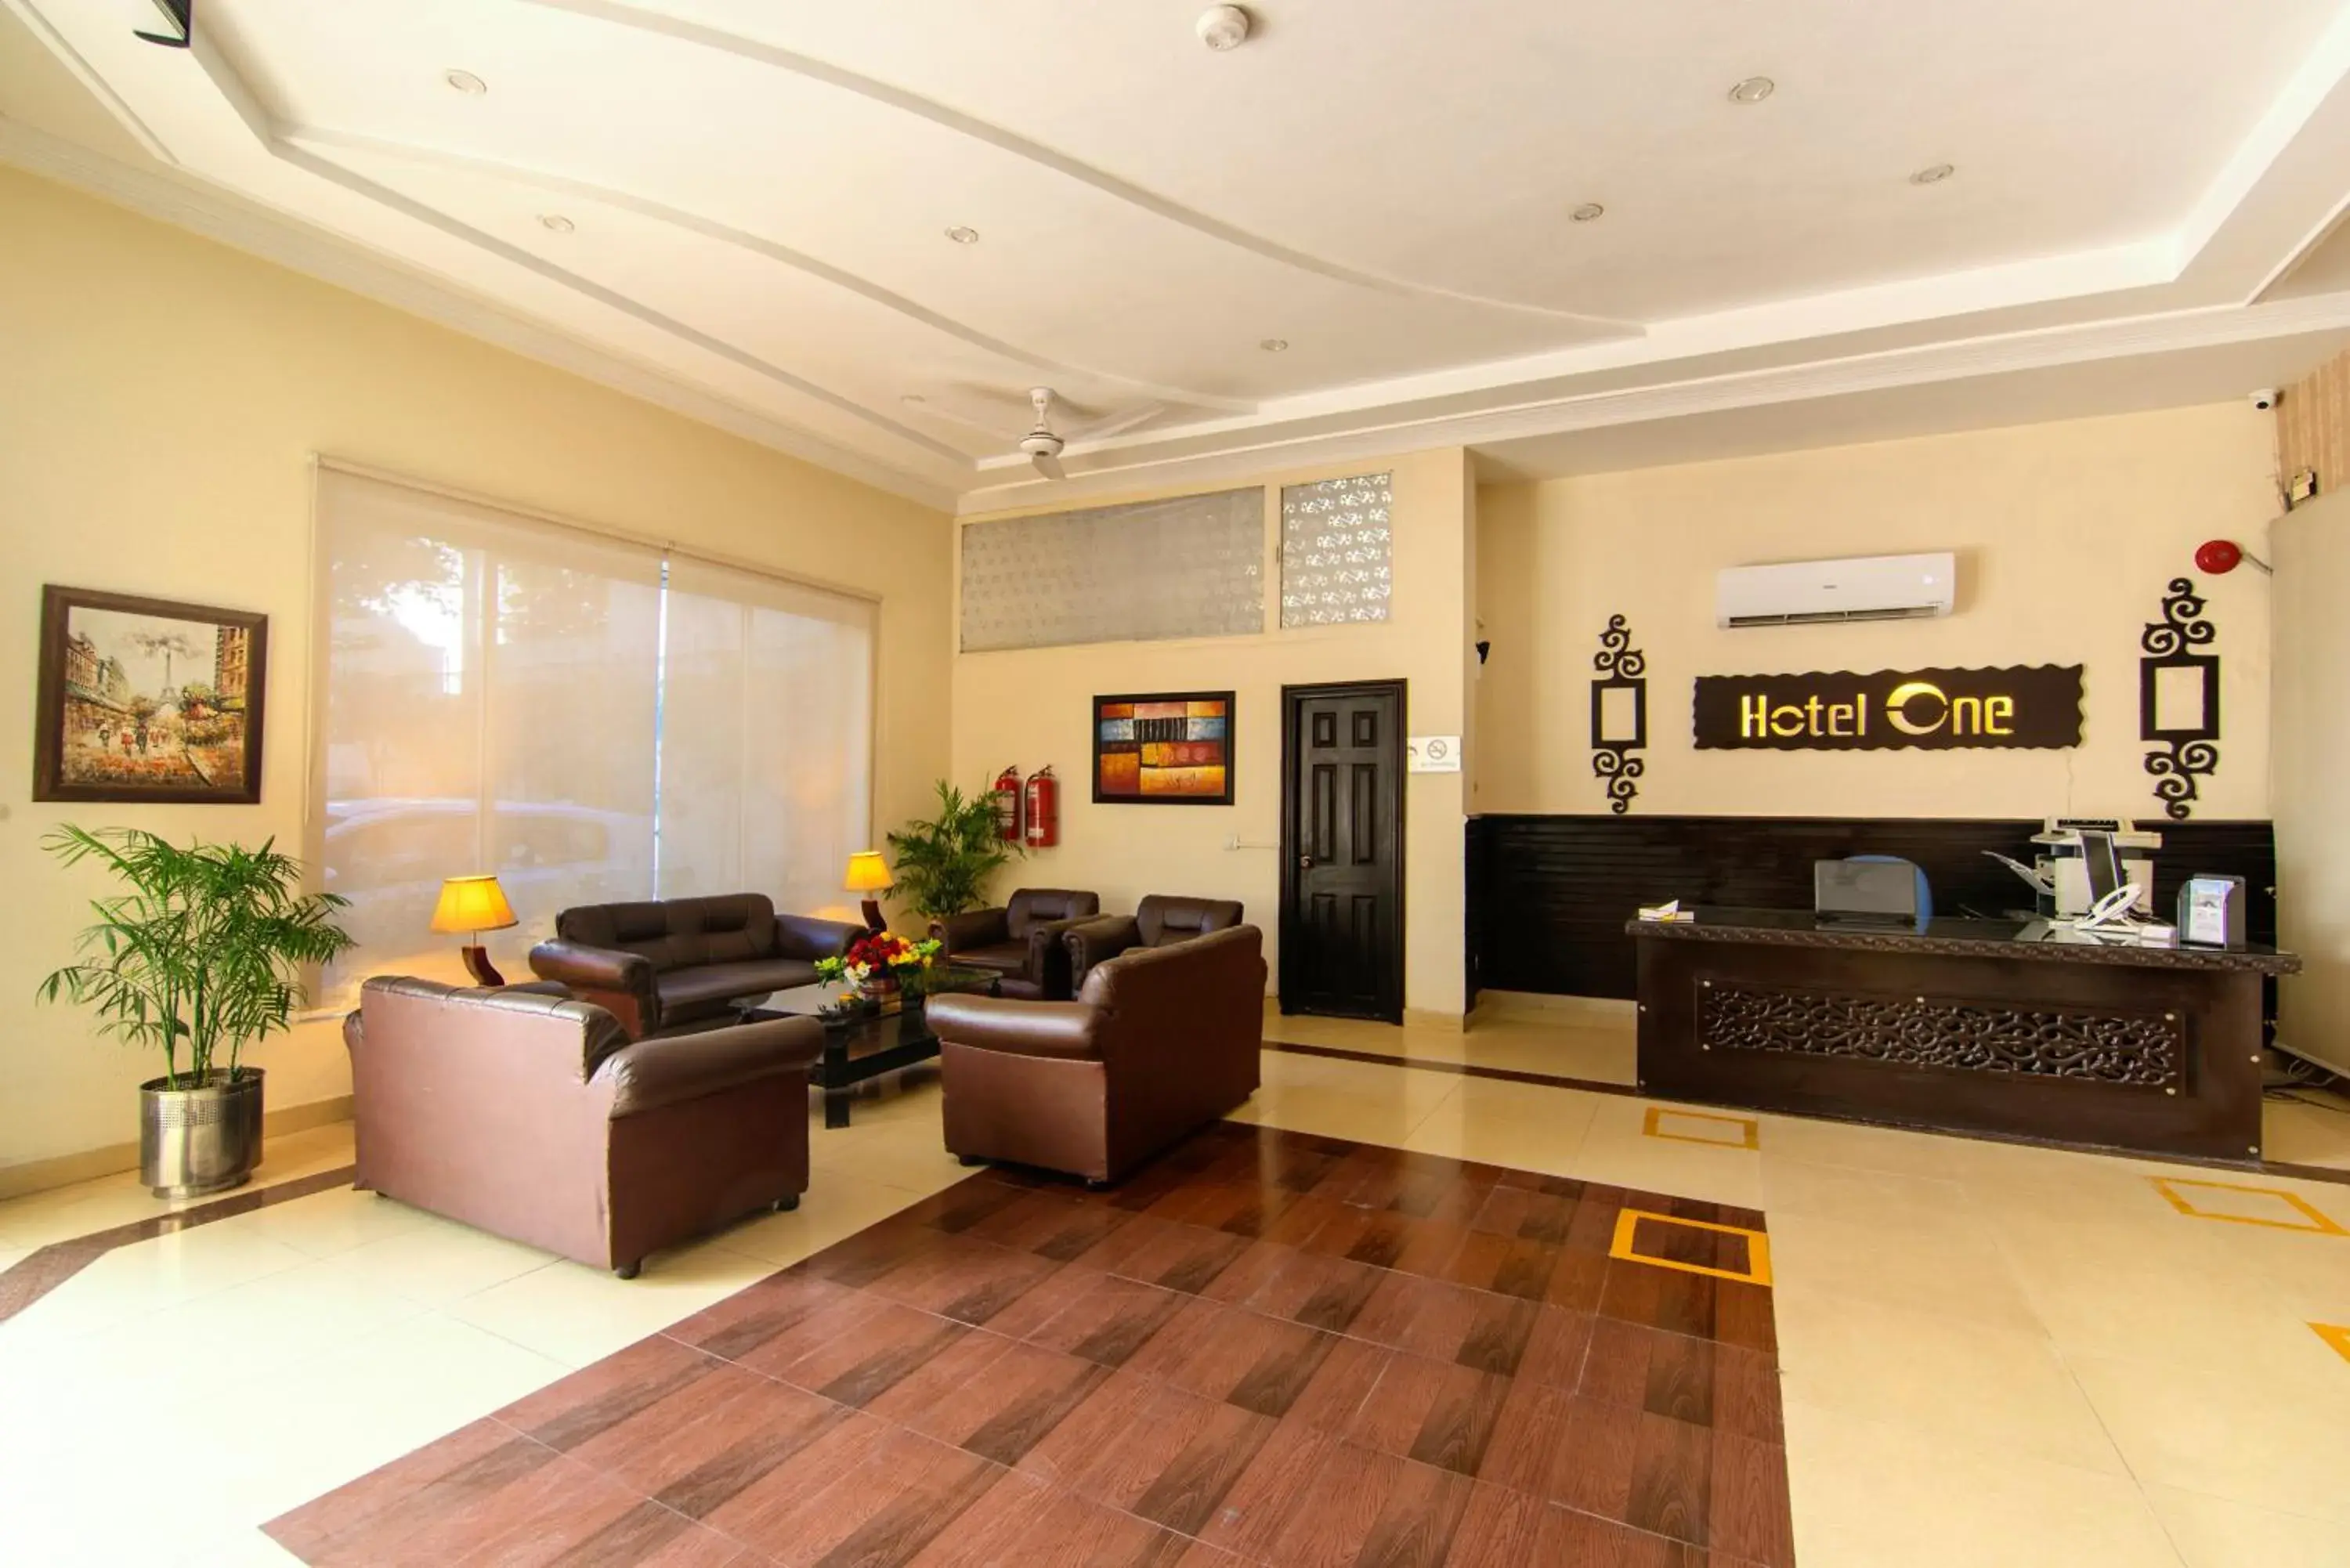 Lobby or reception, Lobby/Reception in Hotel One Lalazar Multan